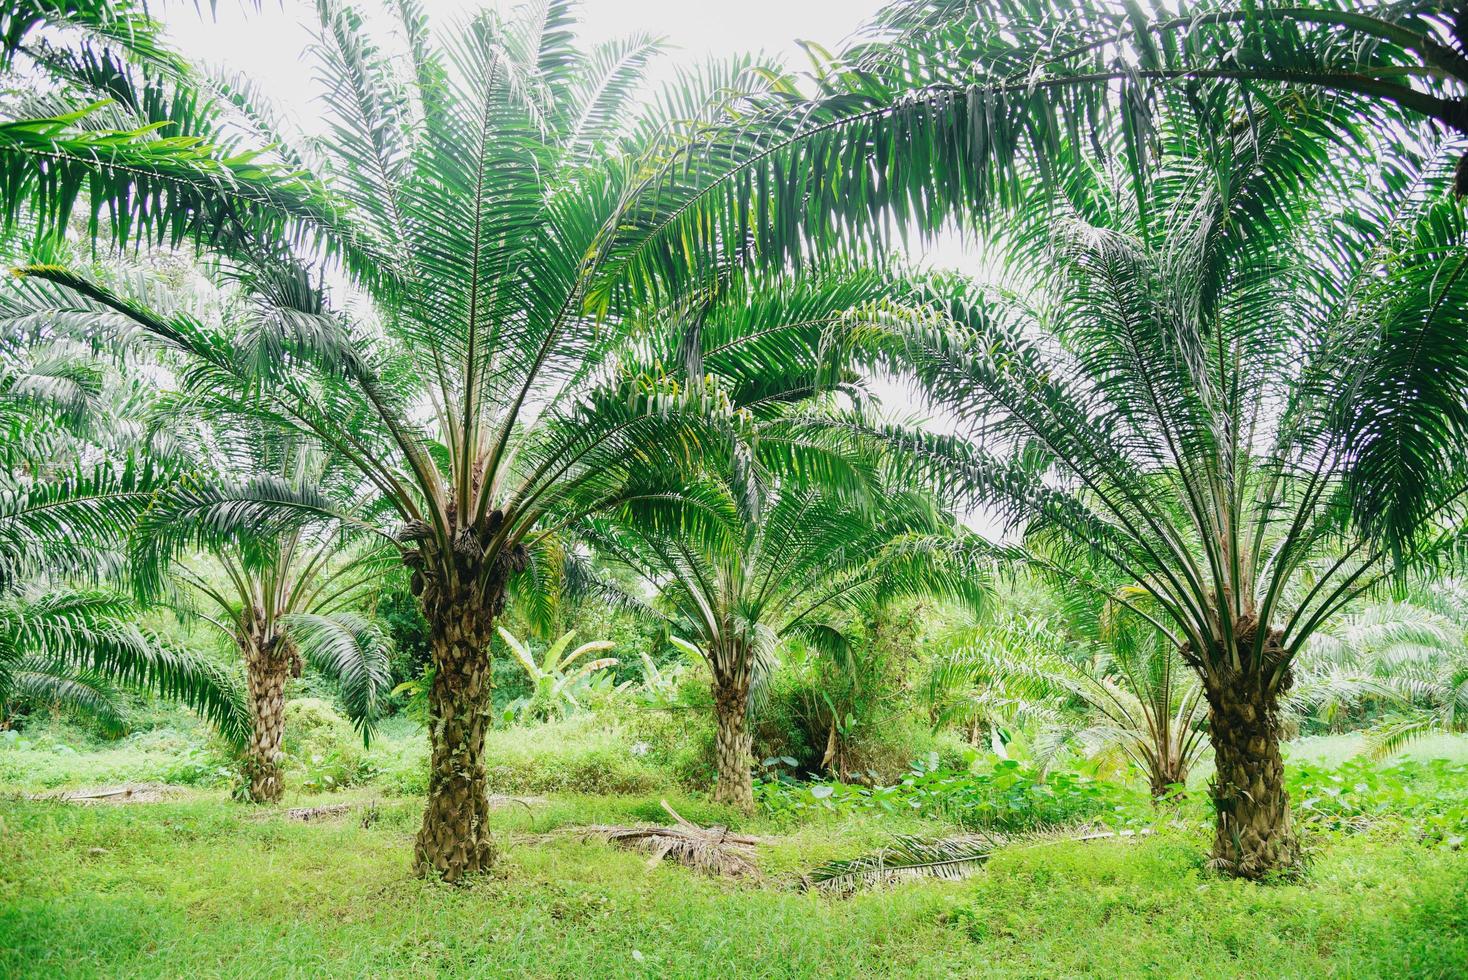 arbre tropical plante palmier champs nature ferme agricole plantation de palmiers, huile de palme des cultures en vert photo